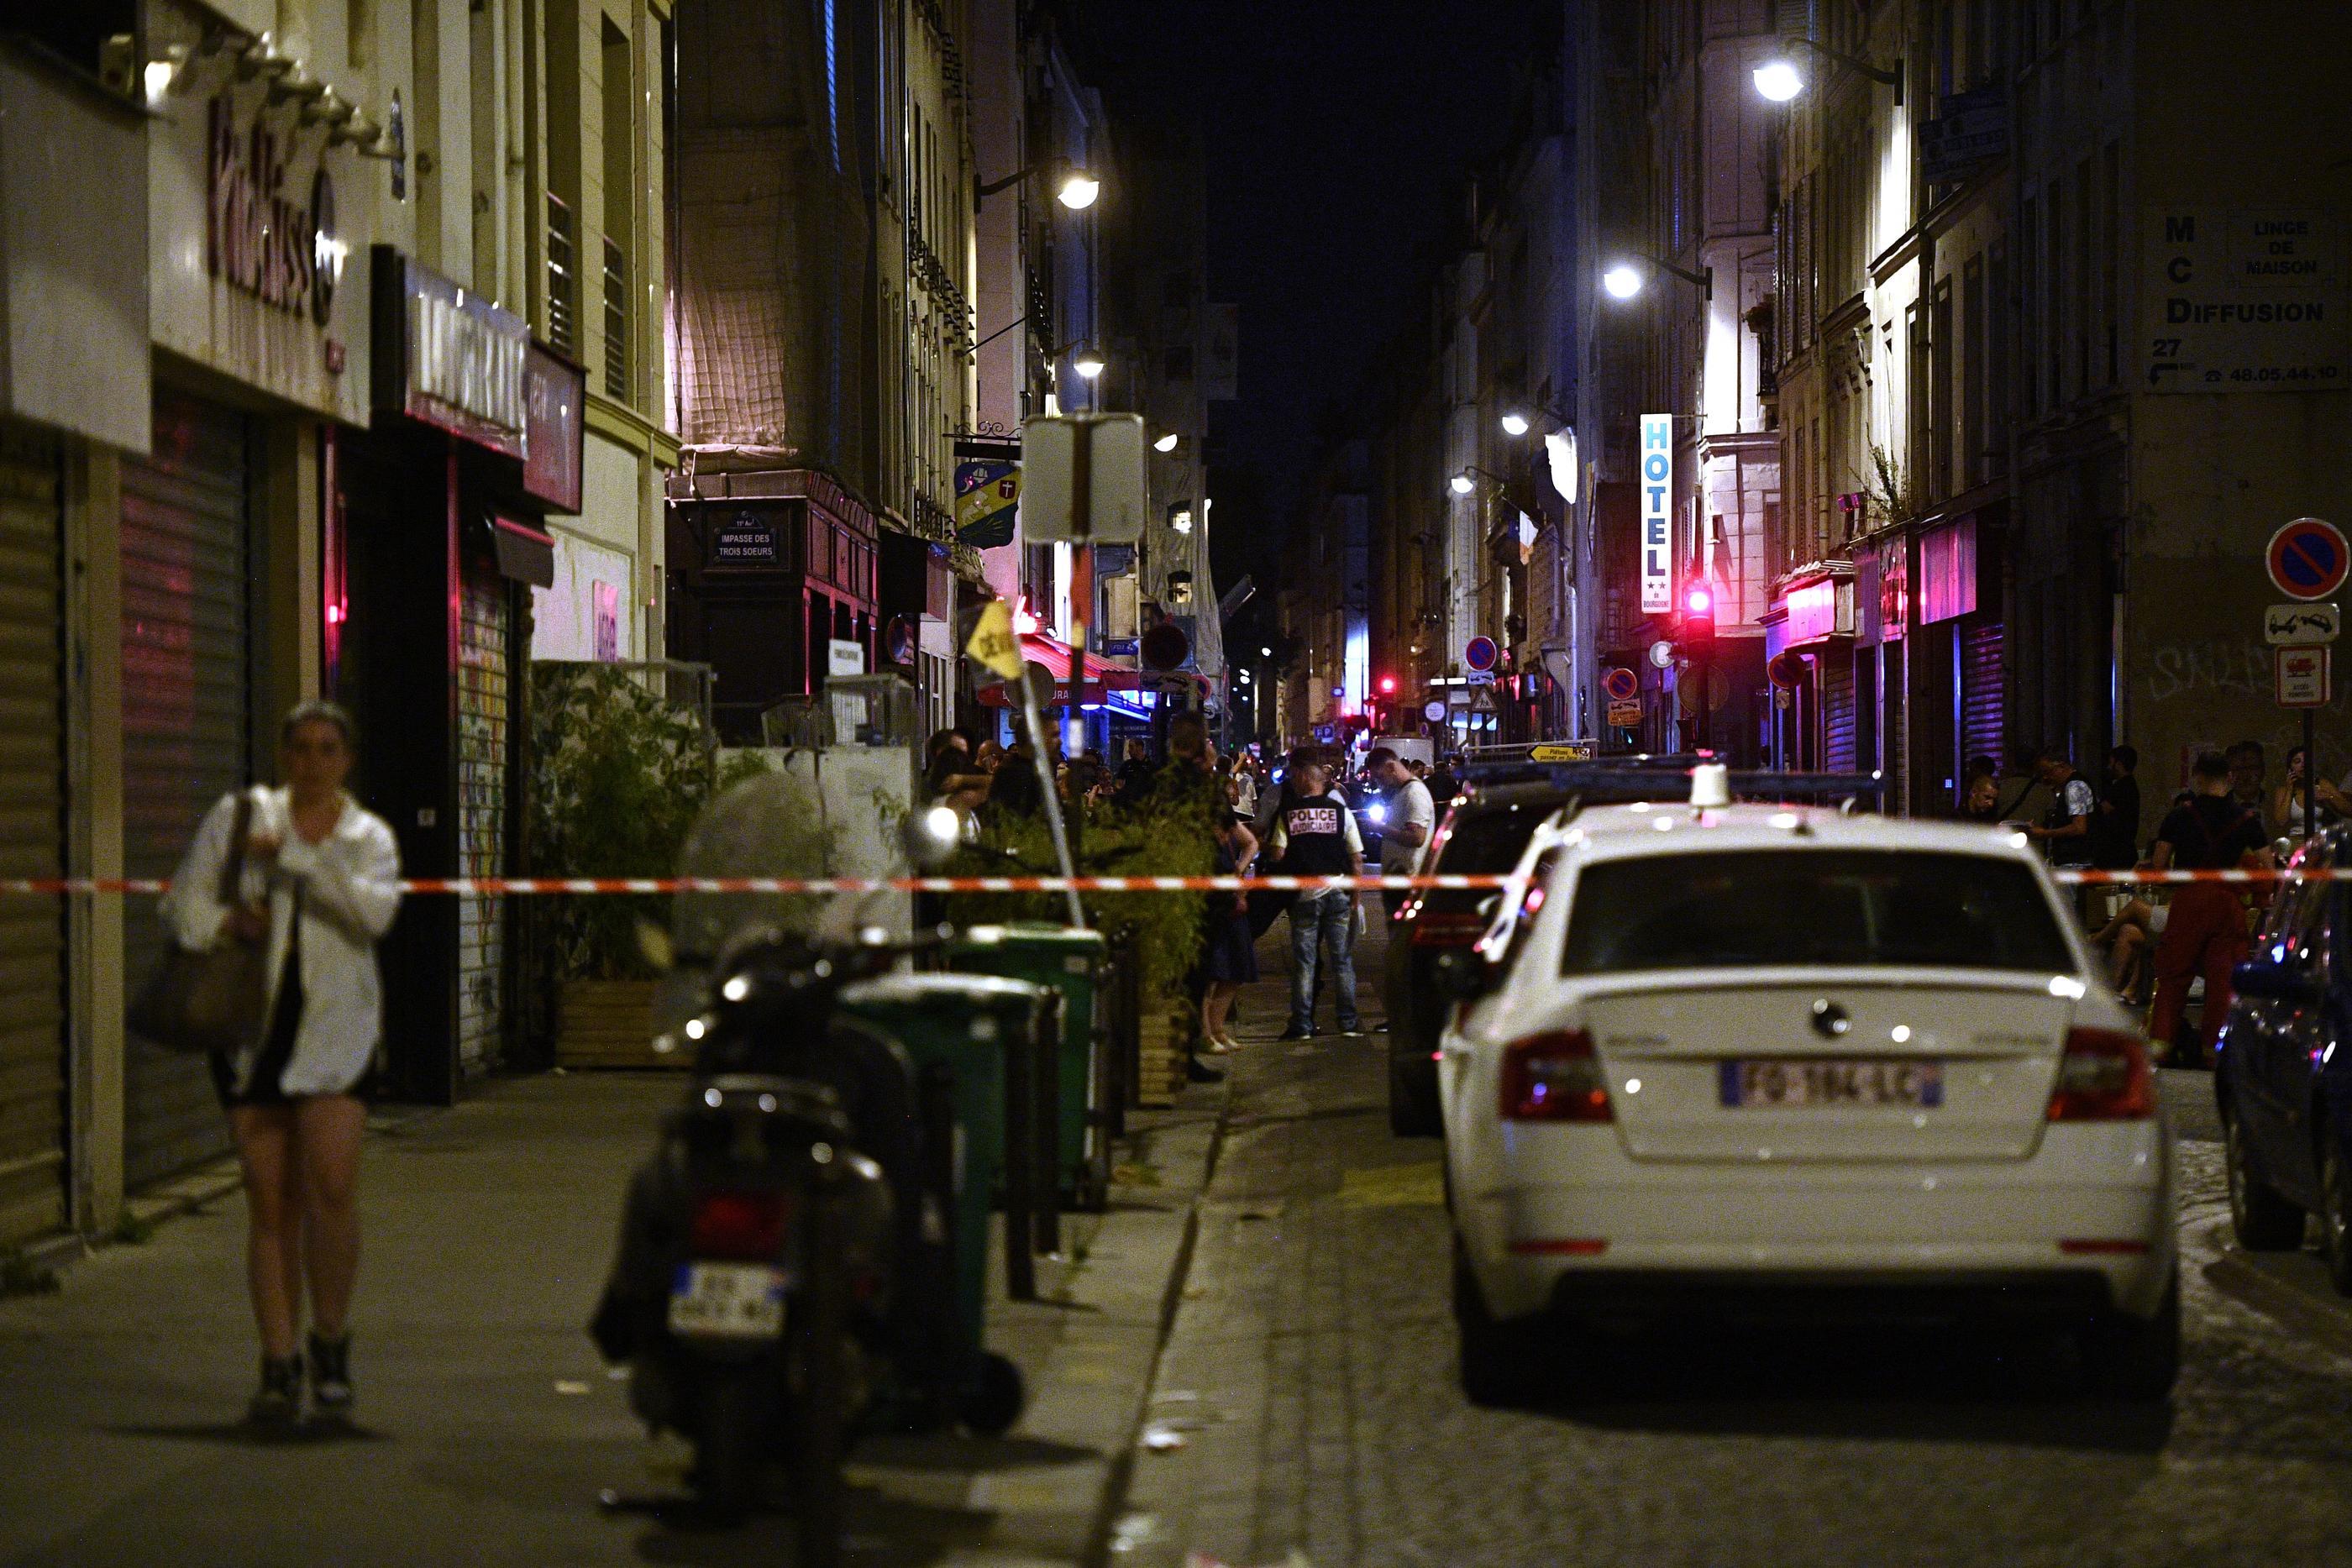 Le 18 juillet 2022, Mamadou T., père de famille de 38 ans, avait été abattu par un commando armé et cagoulé dans un bar à chicha, rue Popincourt (Paris XIe).  AFP/Christophe ARCHAMBAULT